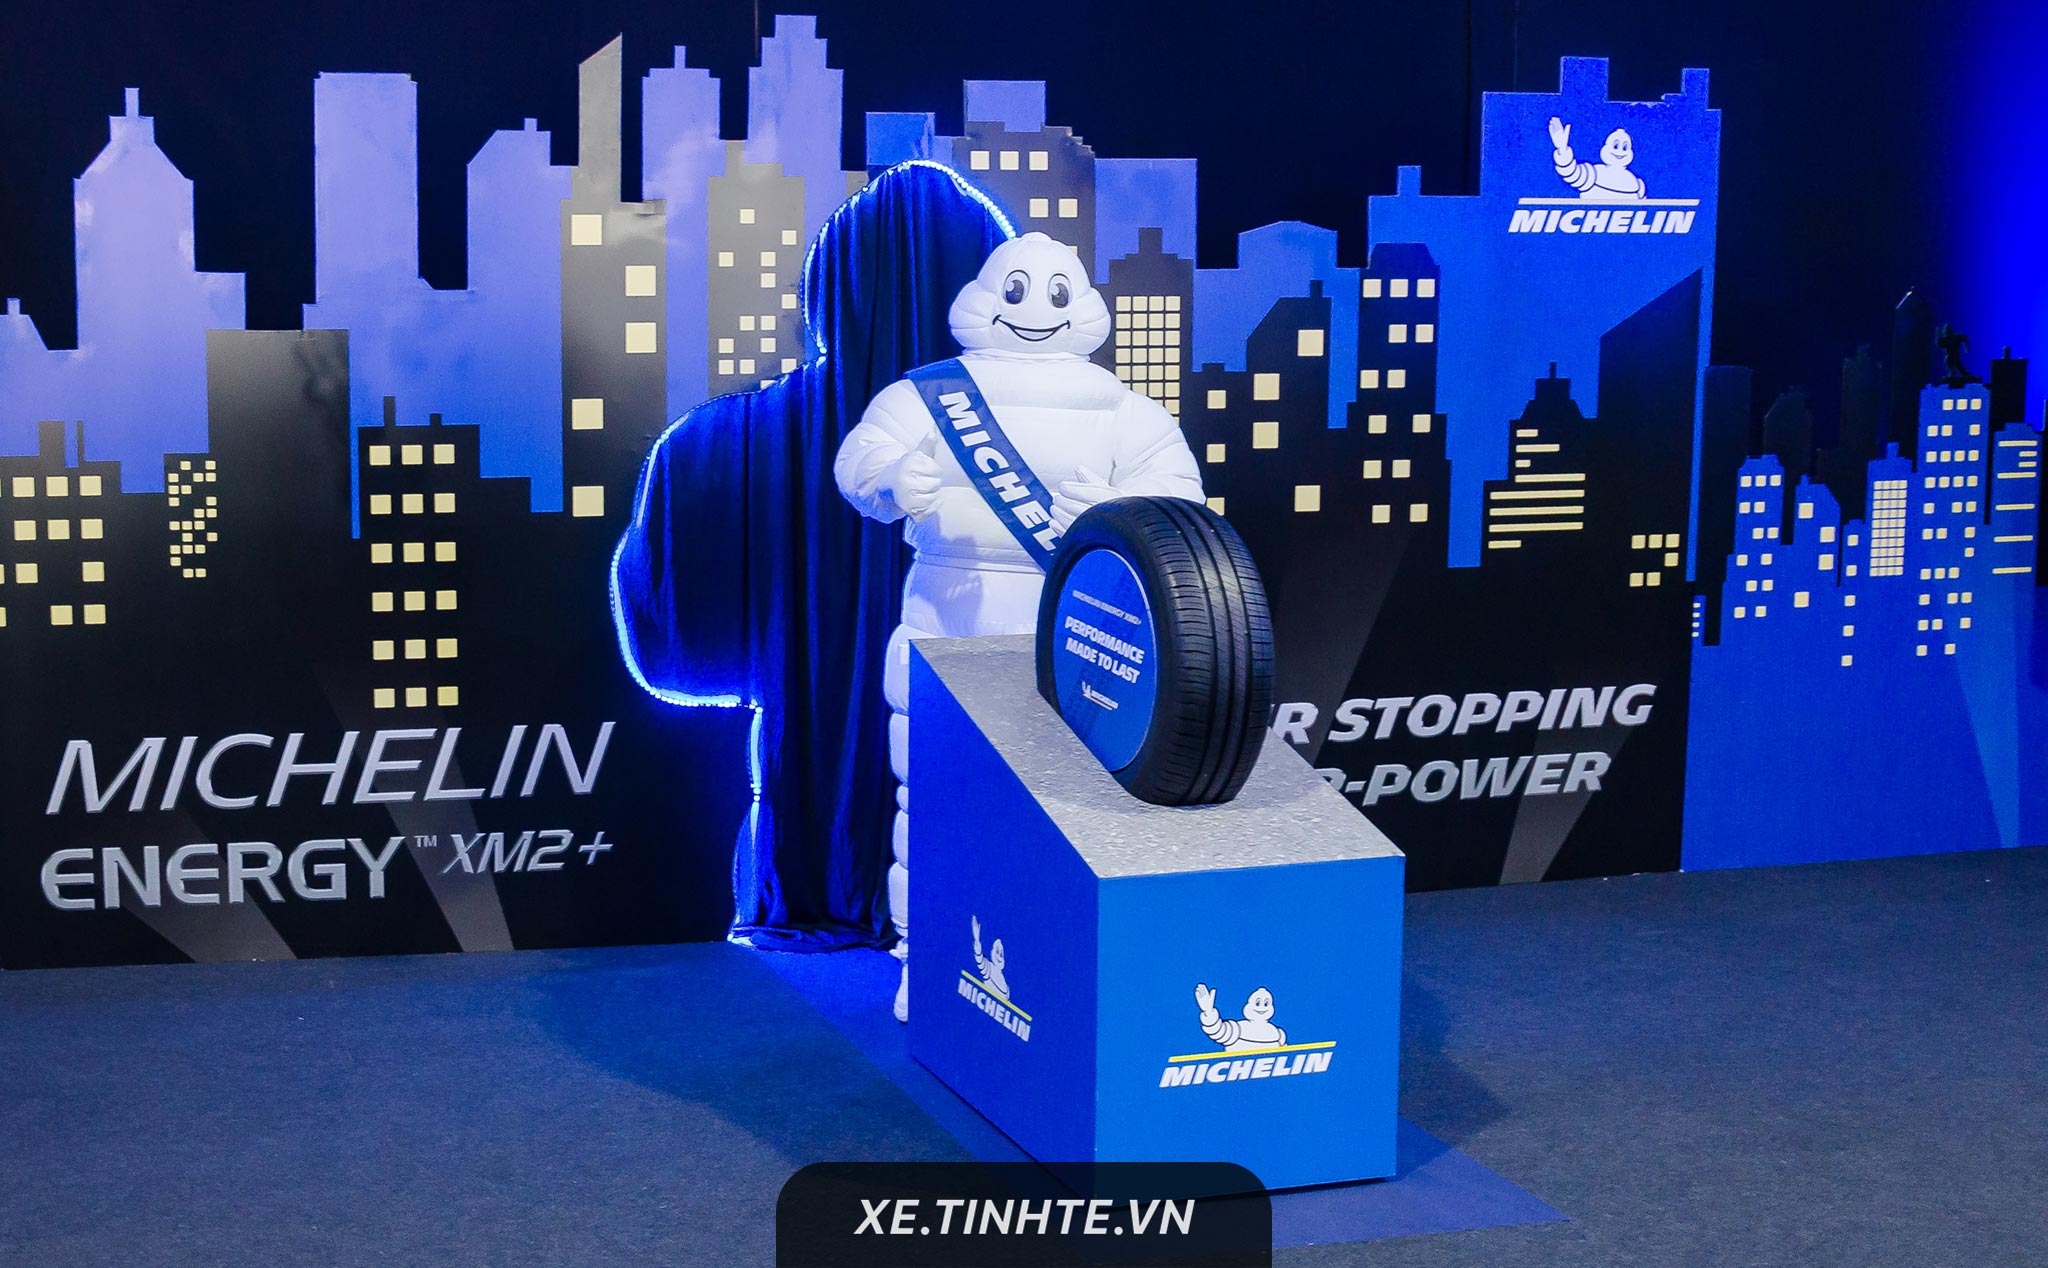 Michelin ra mắt lốp xe Energy XM2+ mới - cải tiến vật liệu, tăng khả năng kiểm soát trên đường ướt